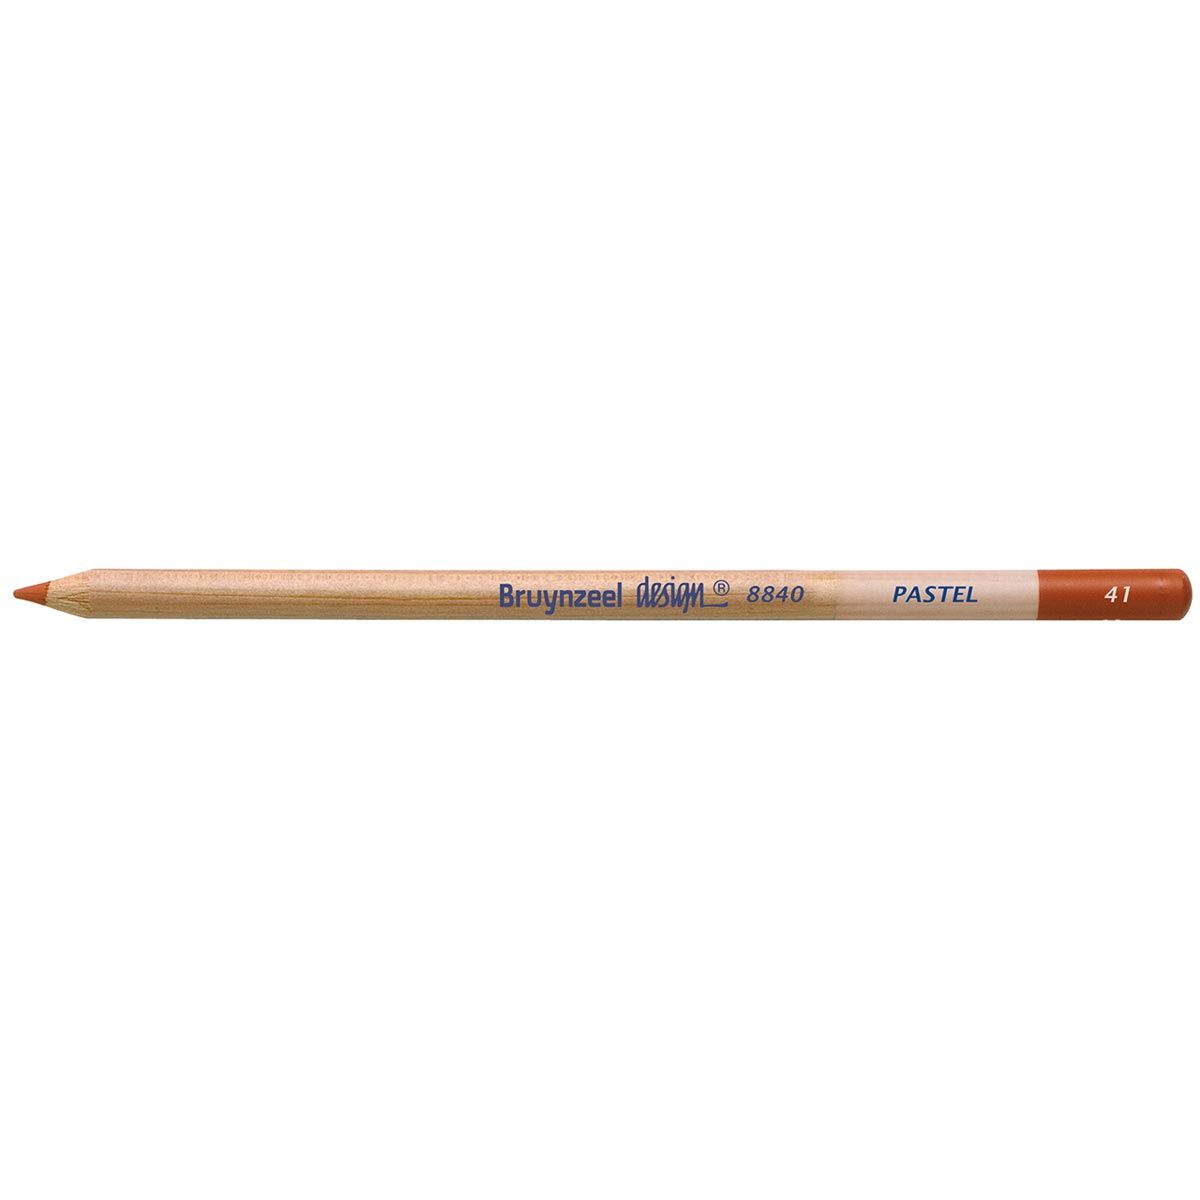 Bruynzeel Design Pastel Pencil - Light Brown 41